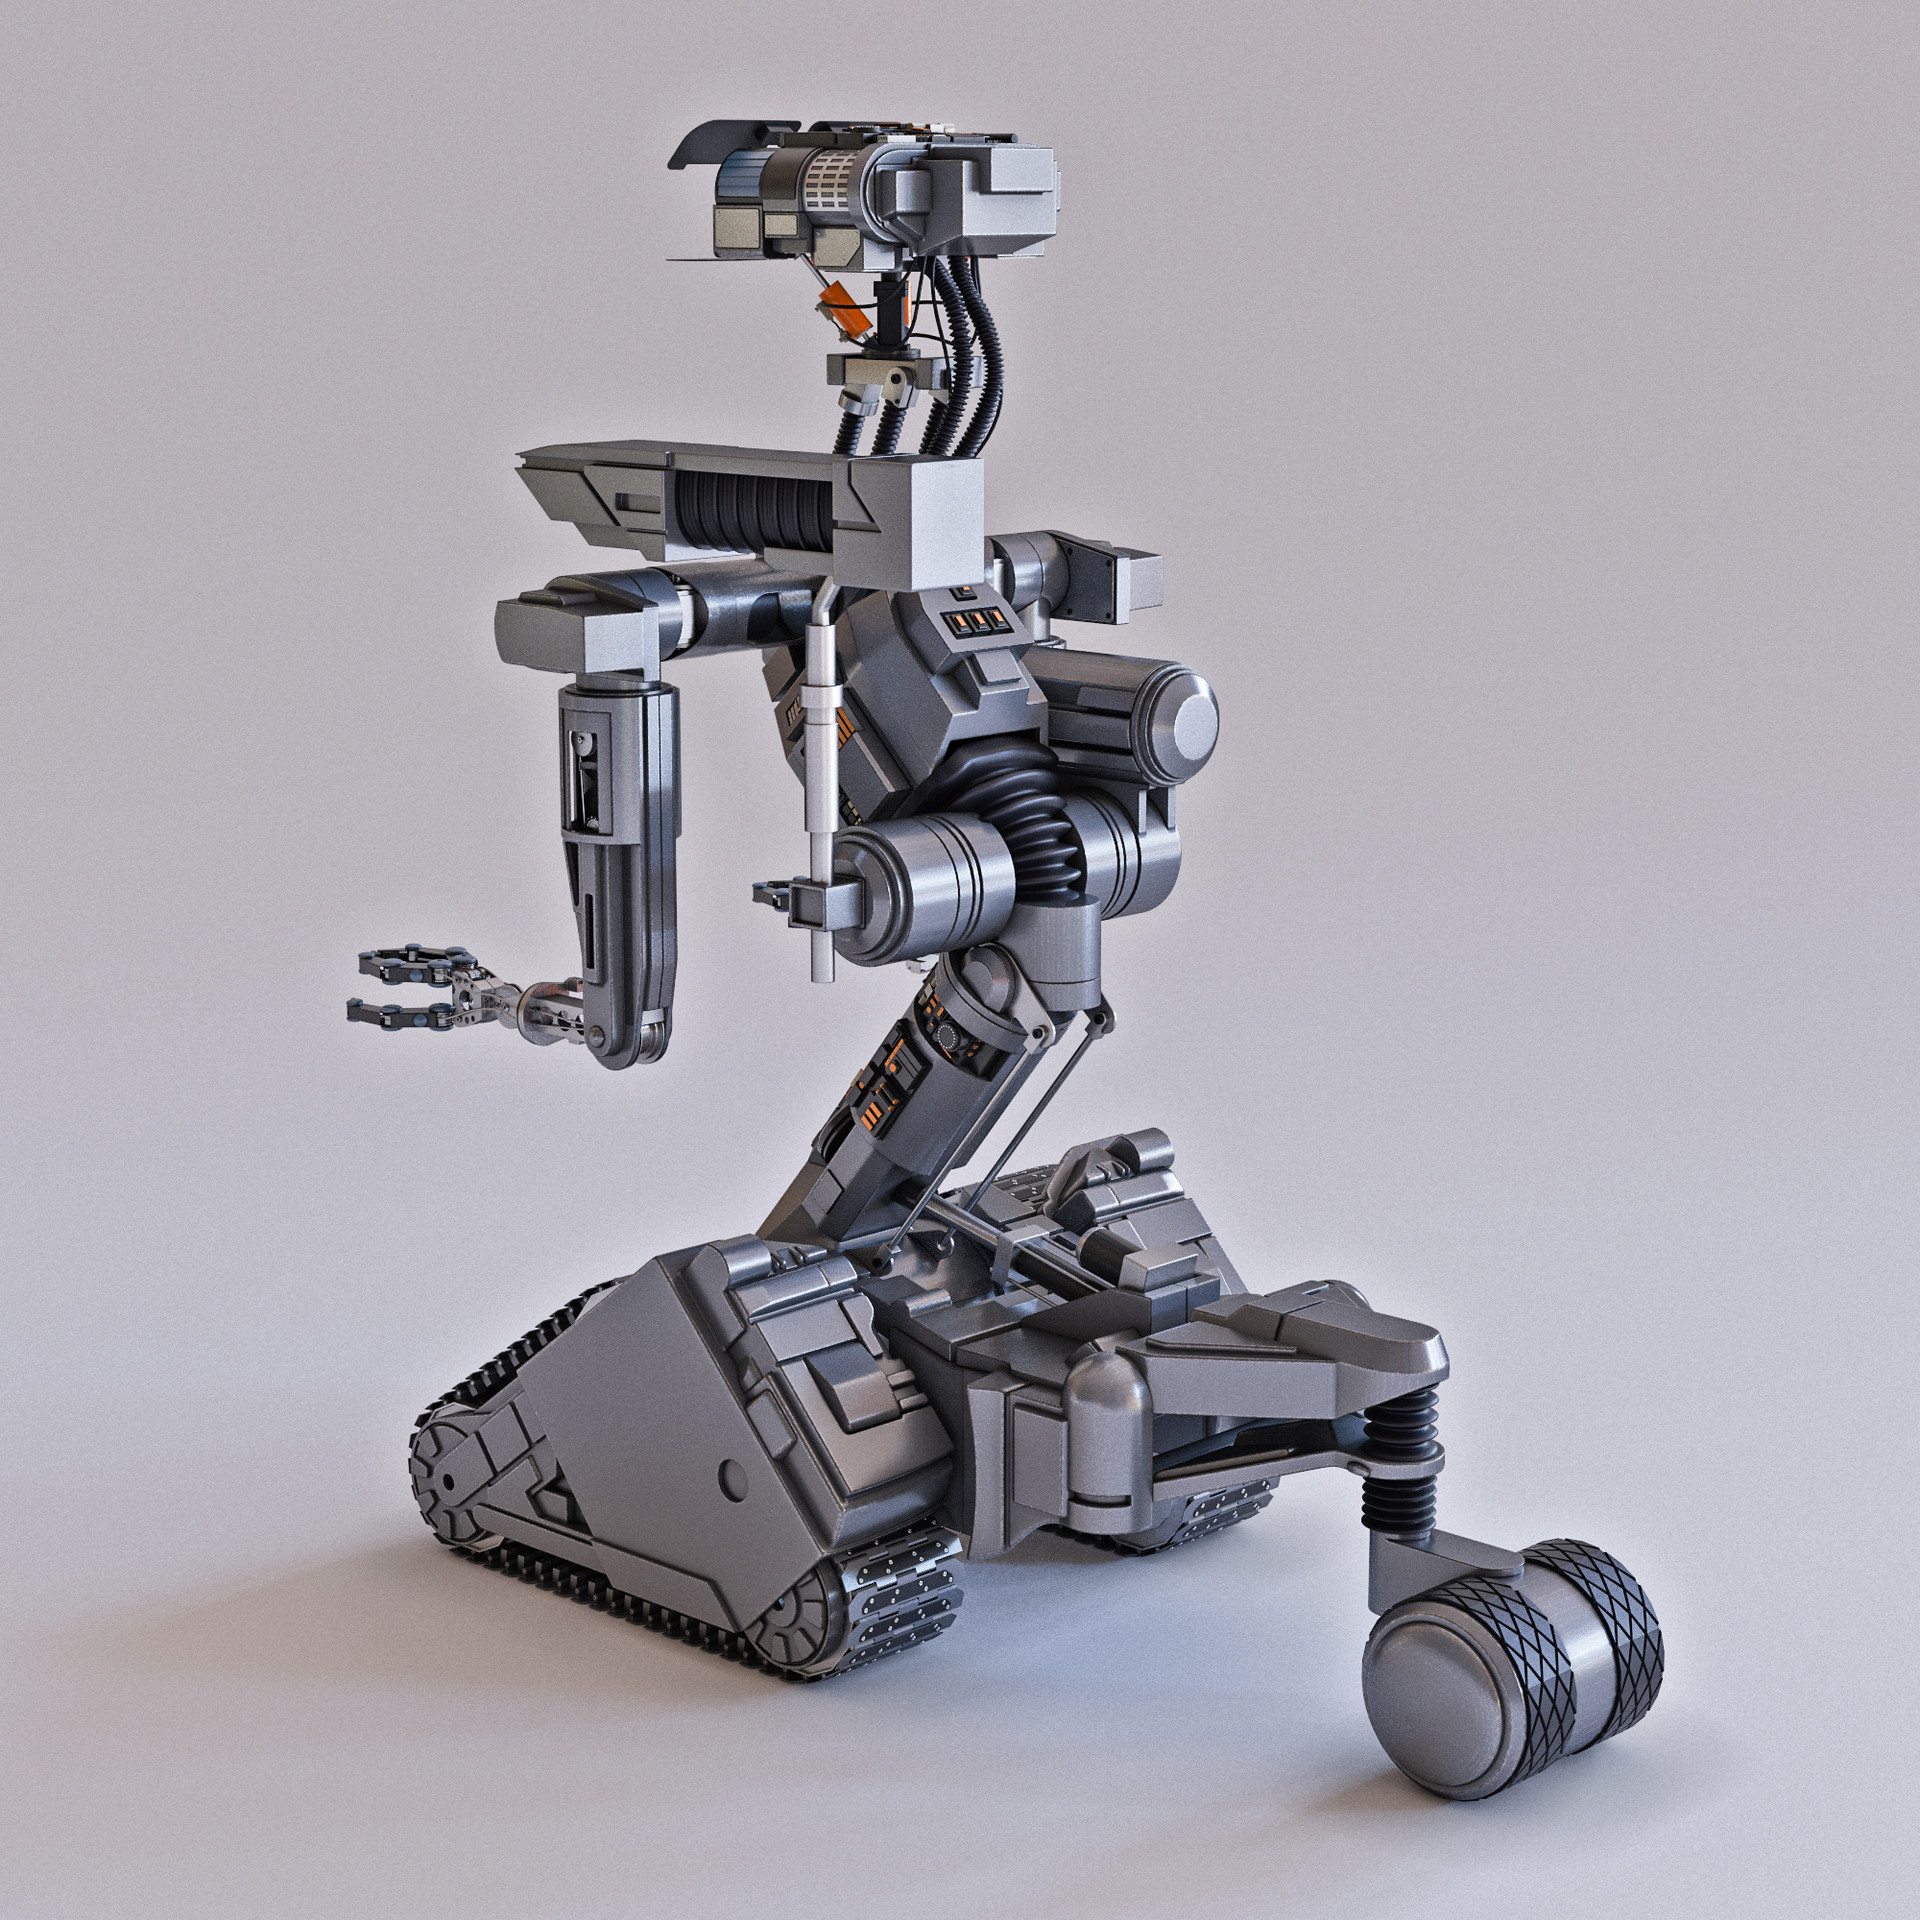 Robot short. Джонни 5 робот. Short circuit Johnny 5 робот. Джонни 5 (короткое замыкание (1986)). Моделирование радиоуправление робот Джонни 5.